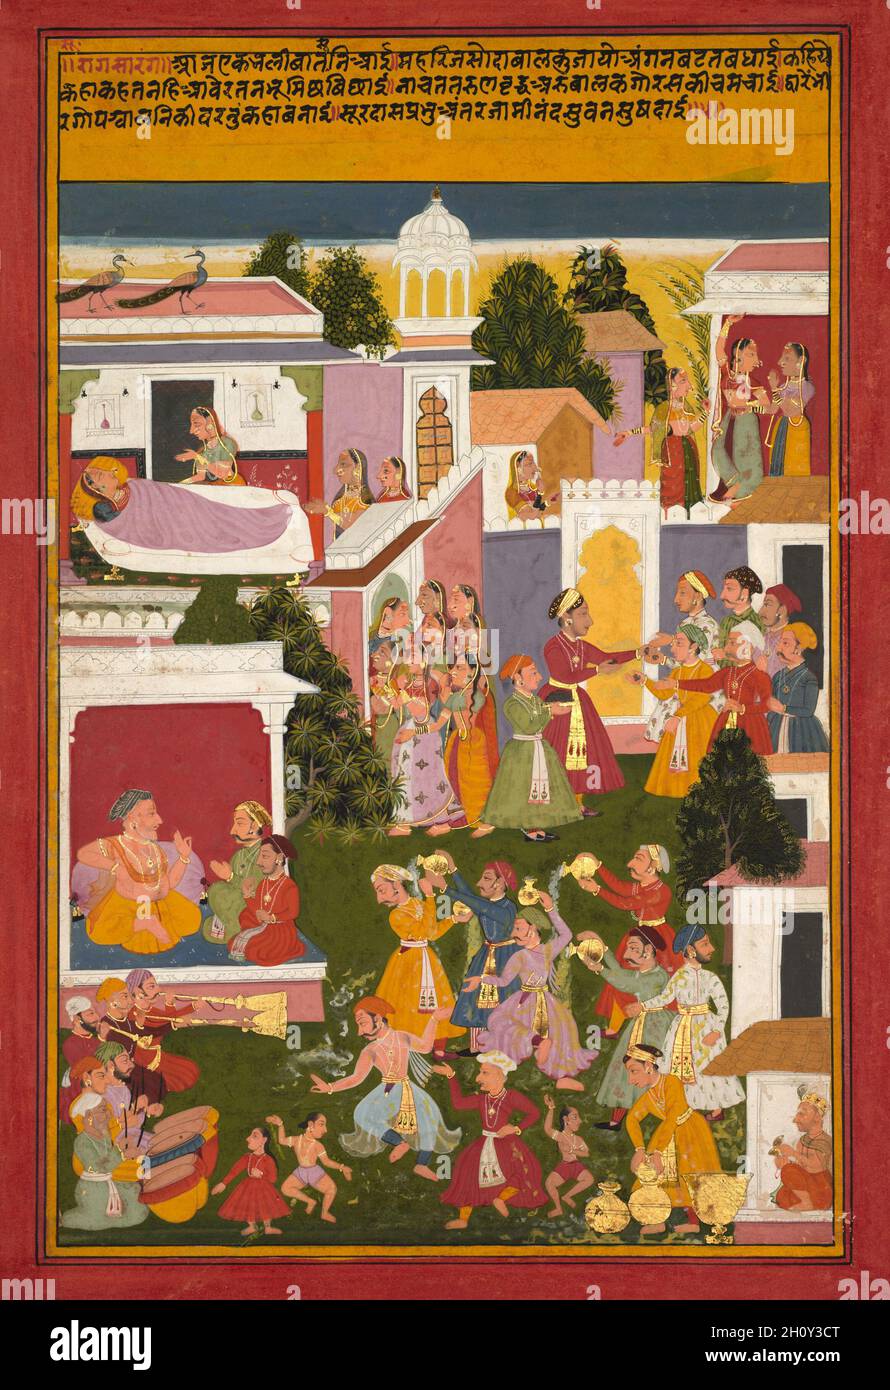 La nascita di Krishna, da un Sursagar di Surdas, c.. 1700. India nordoccidentale, Rajasthan, scuola di Mewar, inizio 18 ° secolo. Acquerello opaco e oro su carta; immagine: 33.6 x 22.2 cm (13 1/4 x 8 3/4 poll.); totale: 37 x 25.4 cm (14 9/16 x 10 poll.); con tappetino: 49 x 36.3 cm (19 5/16 x 14 5/16 poll.). Il poeta cieco e Indù saint Surdas (1578/79–c.. 1581), un devoto di Krishna, è mostrato nella capanna in basso a destra giocando i cembali per misurare il metro mentre recita il suo poema, chiamato Sursagar. Il versetto 5 è scritto in cima alla pagina, e le scene delle feste che circondano l'arrivo della ne Foto Stock